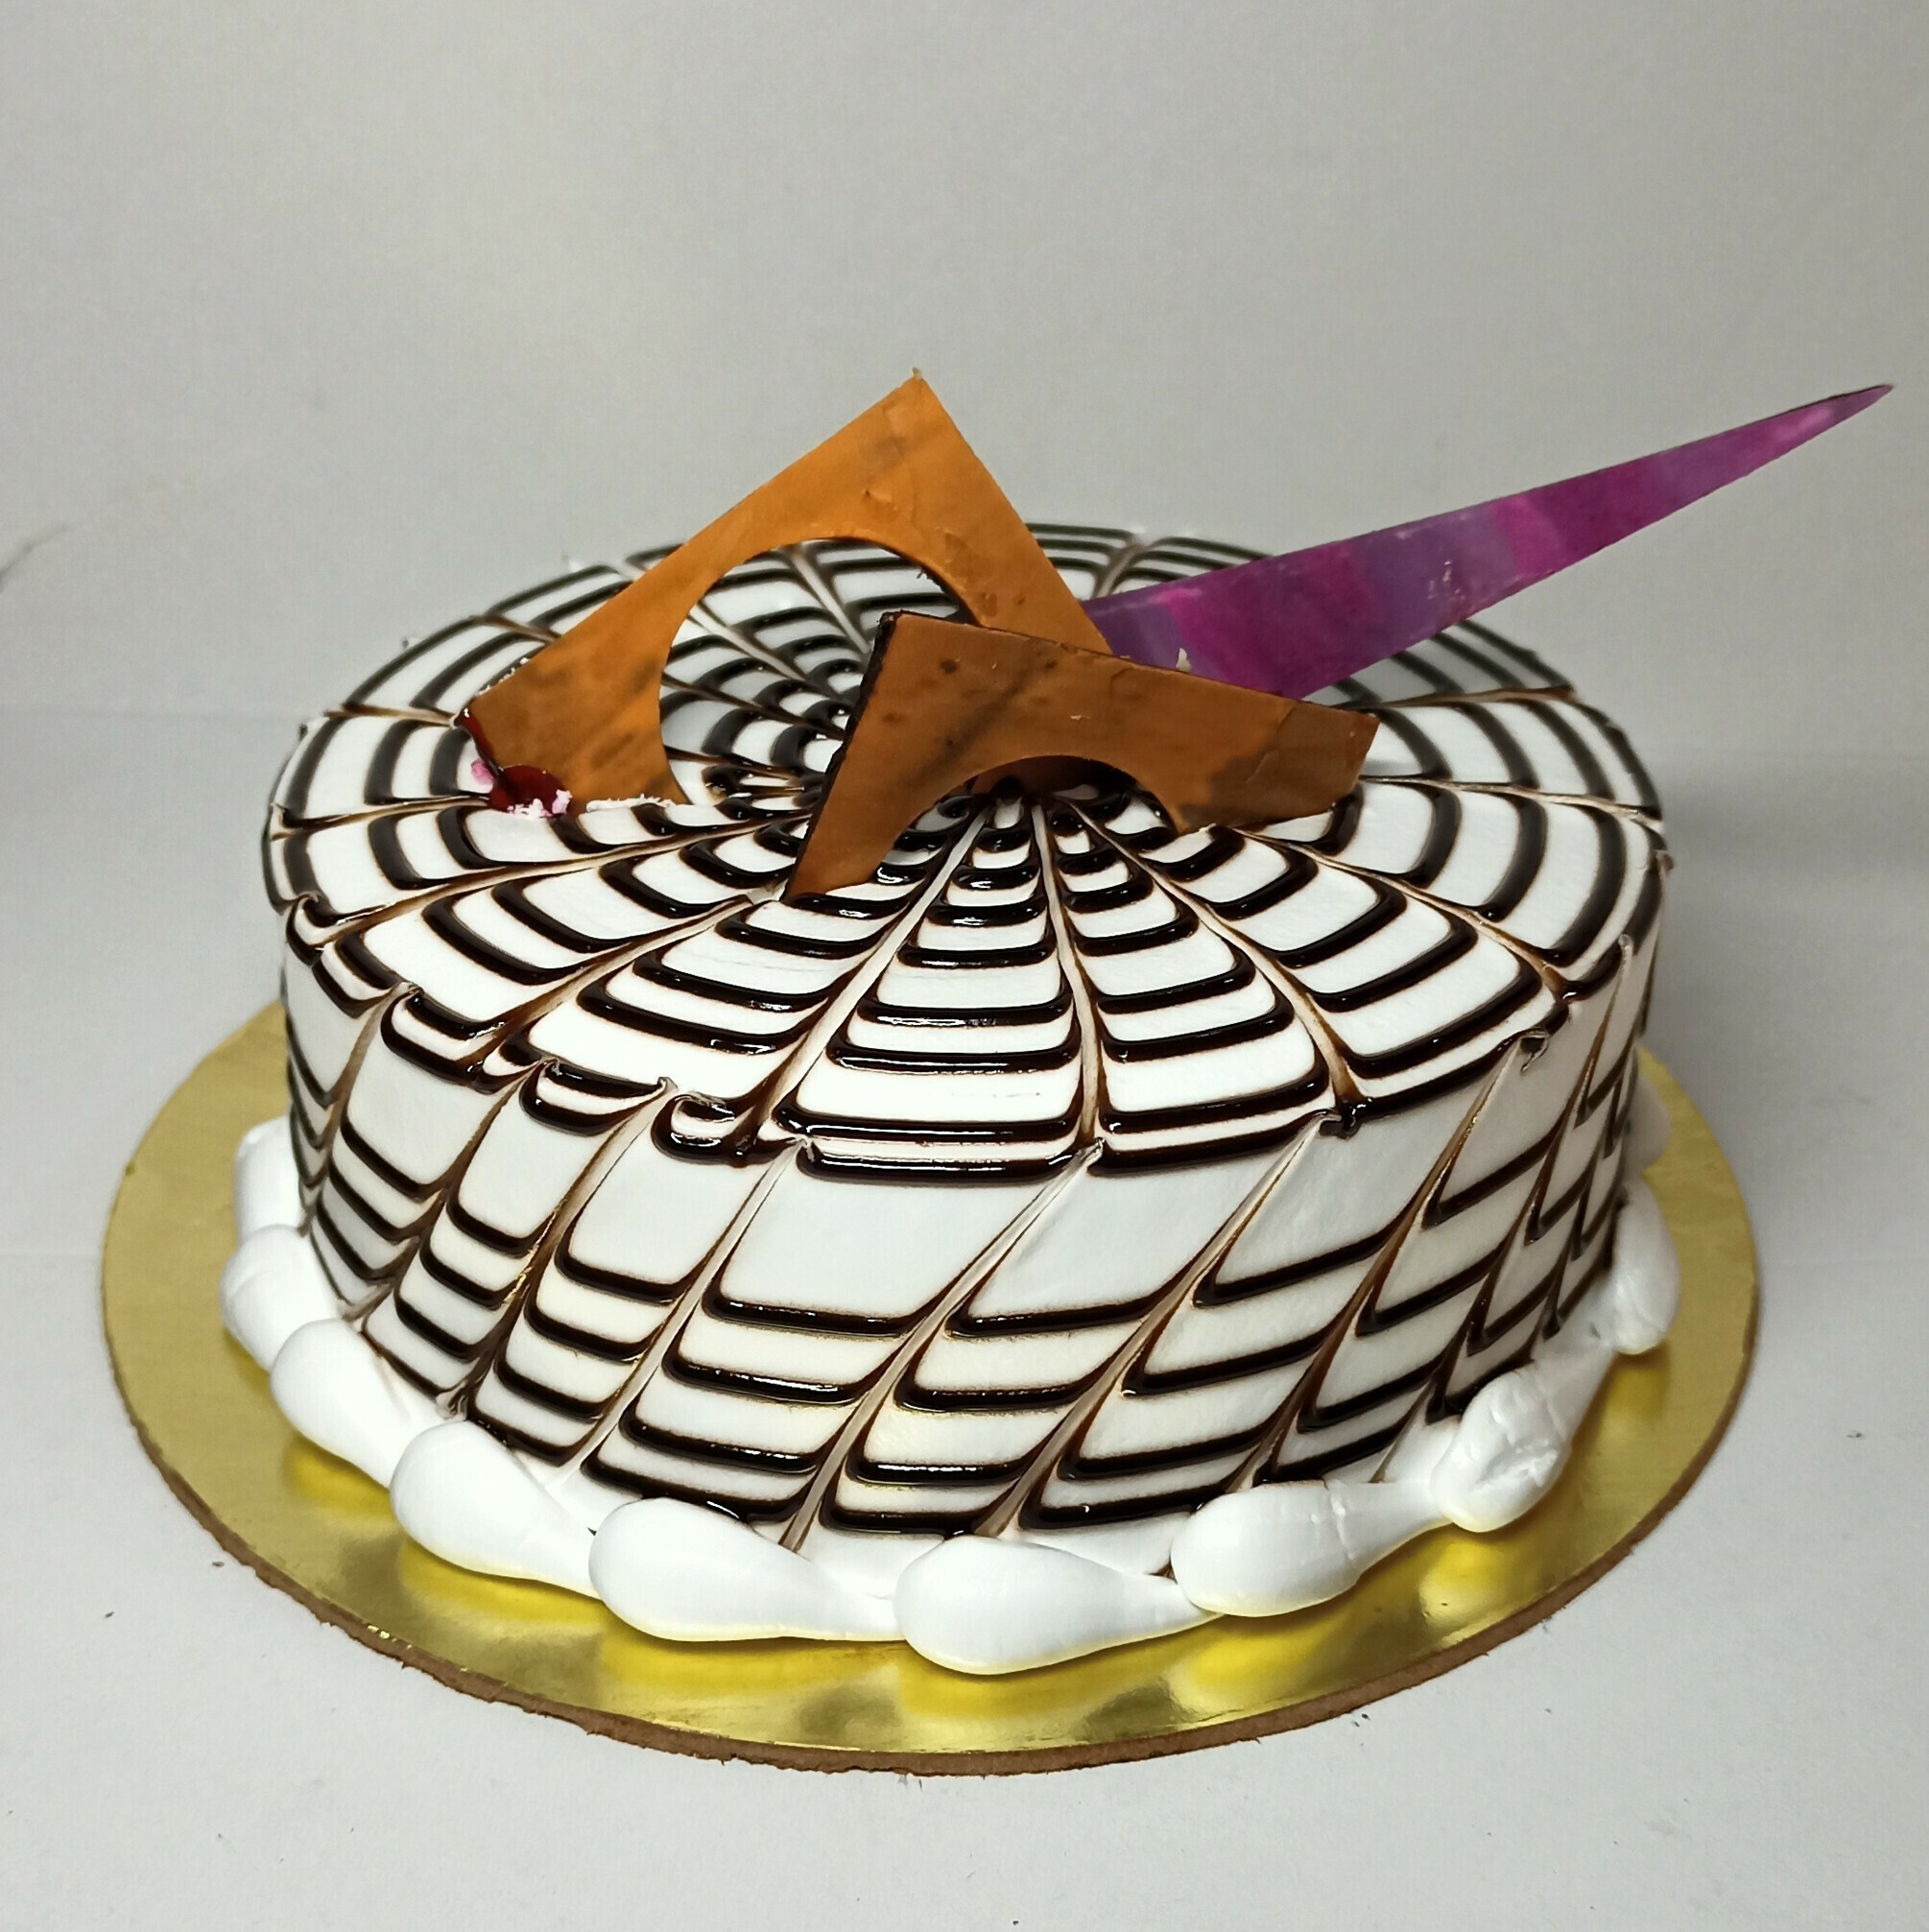 Giant (8”) Zebra Cake! : r/Baking